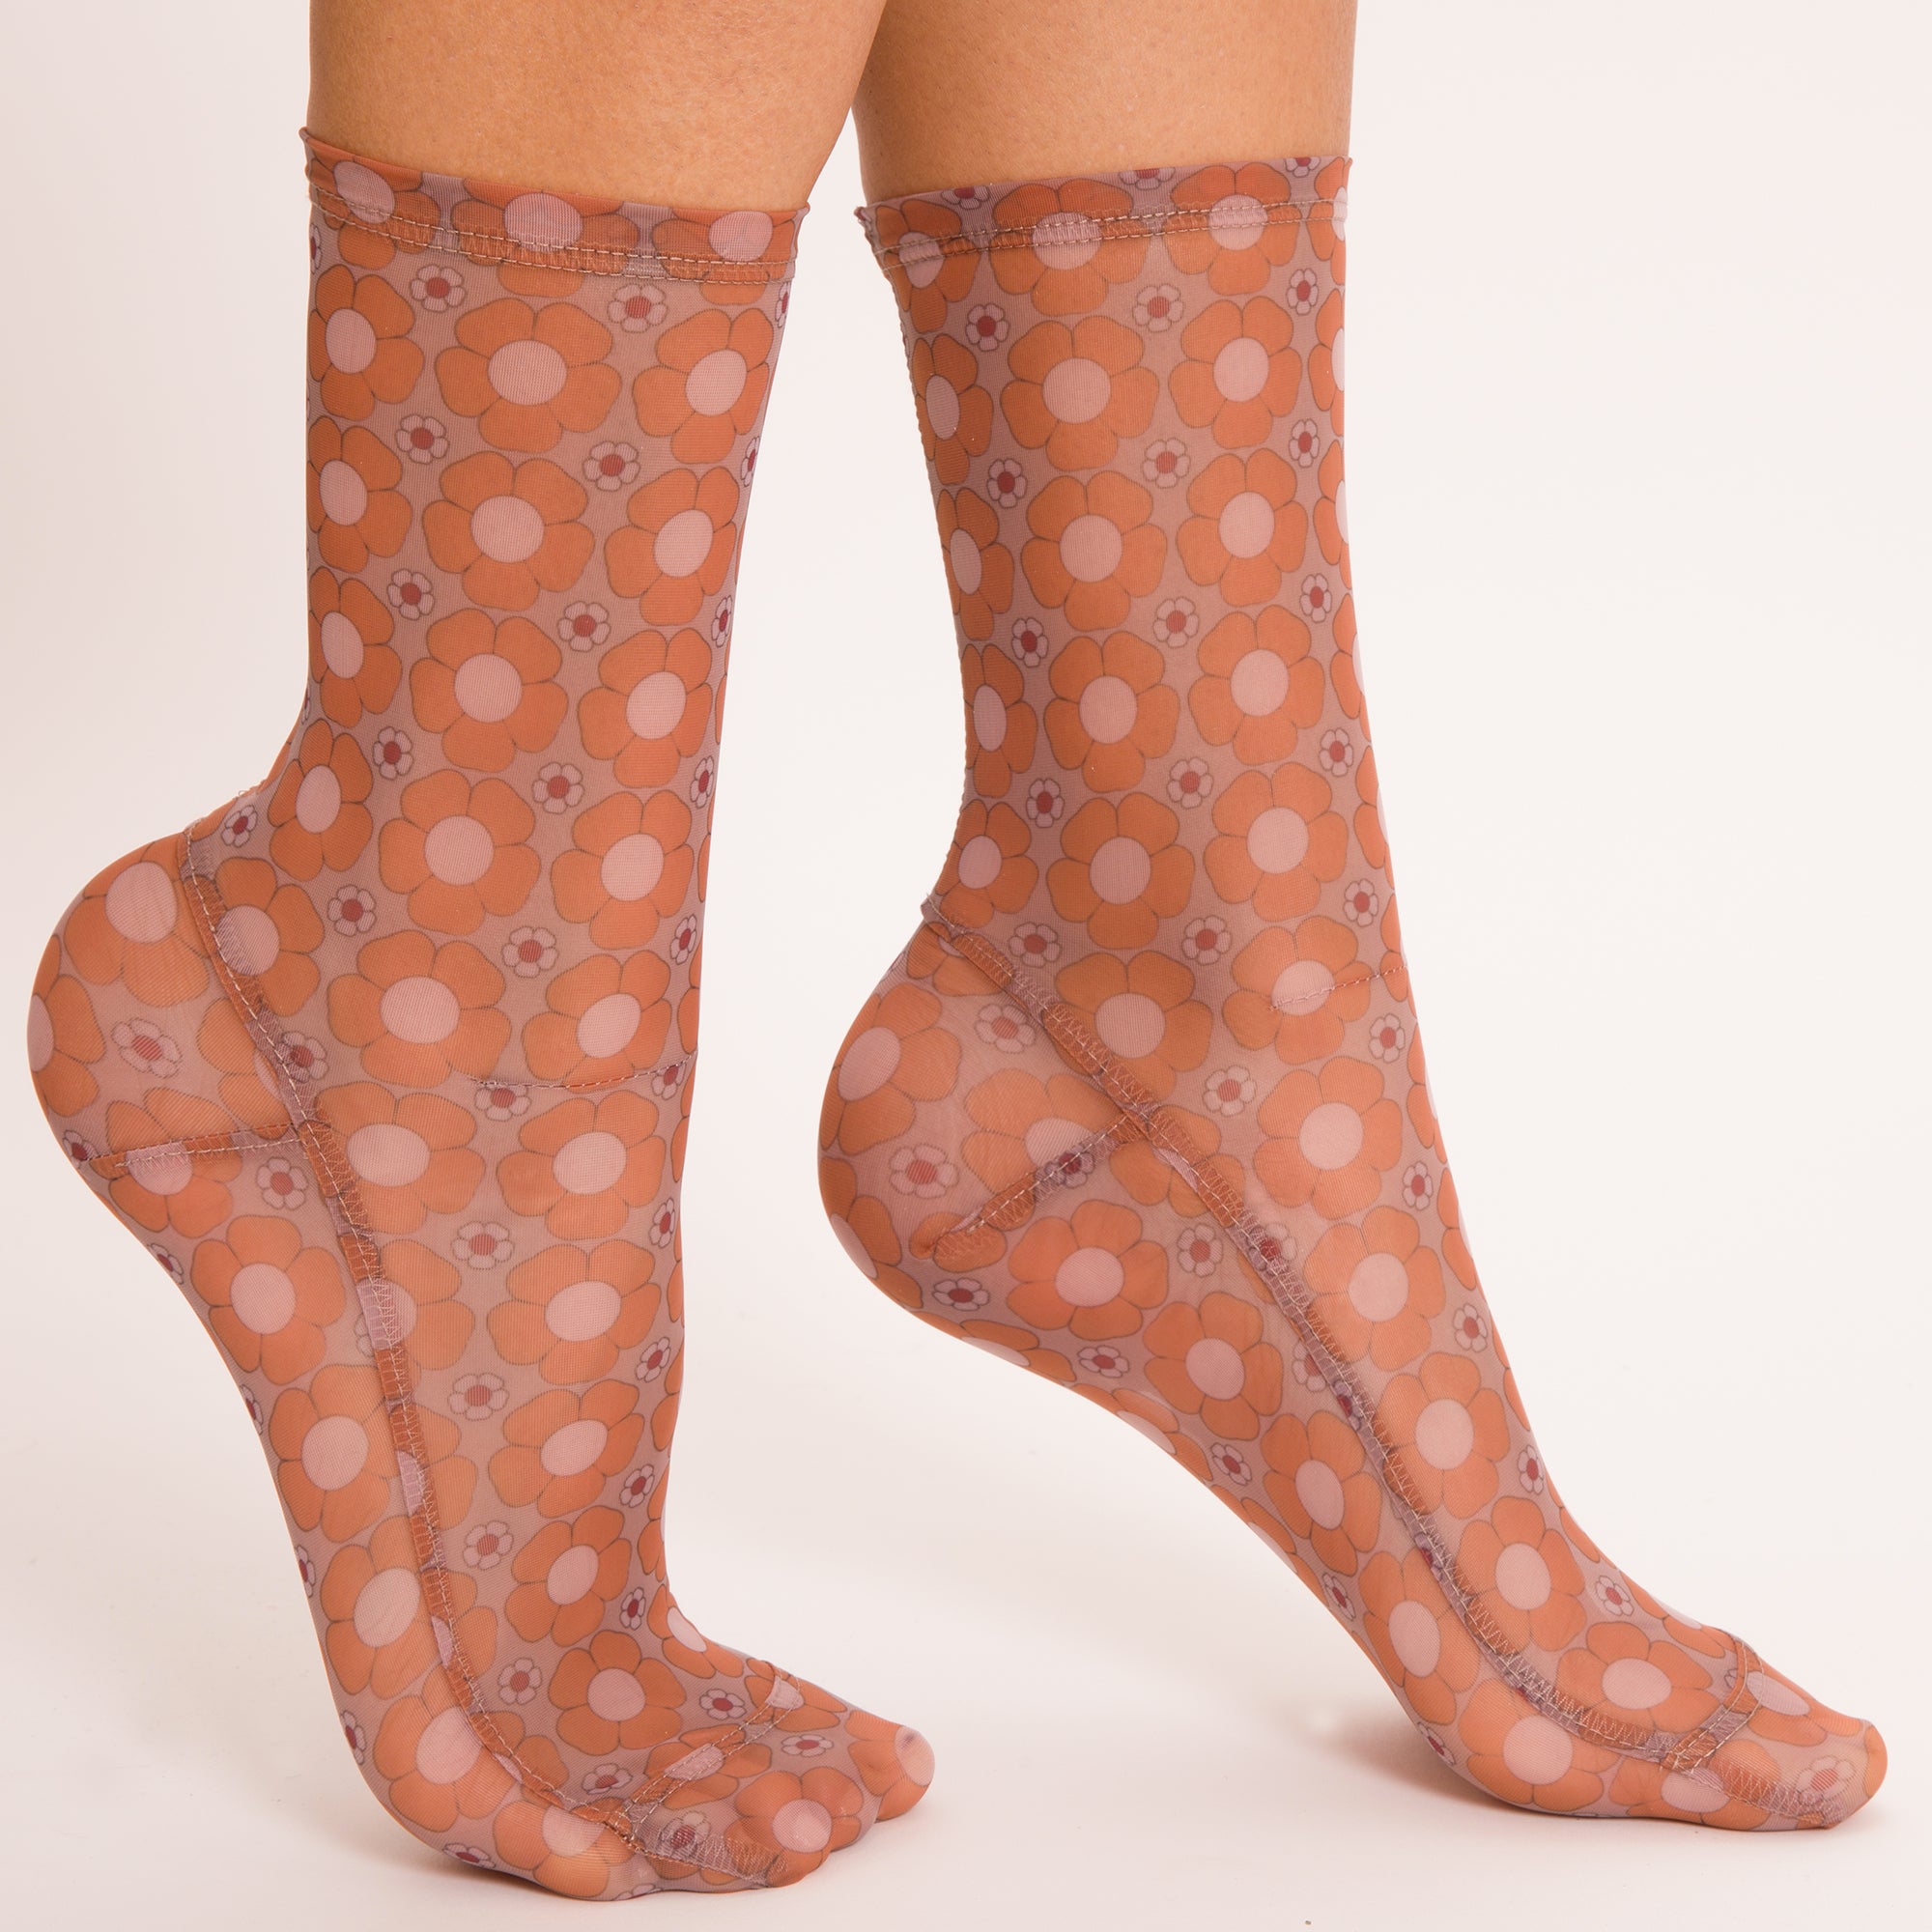 Darner Violet Mesh socks – Darner Socks